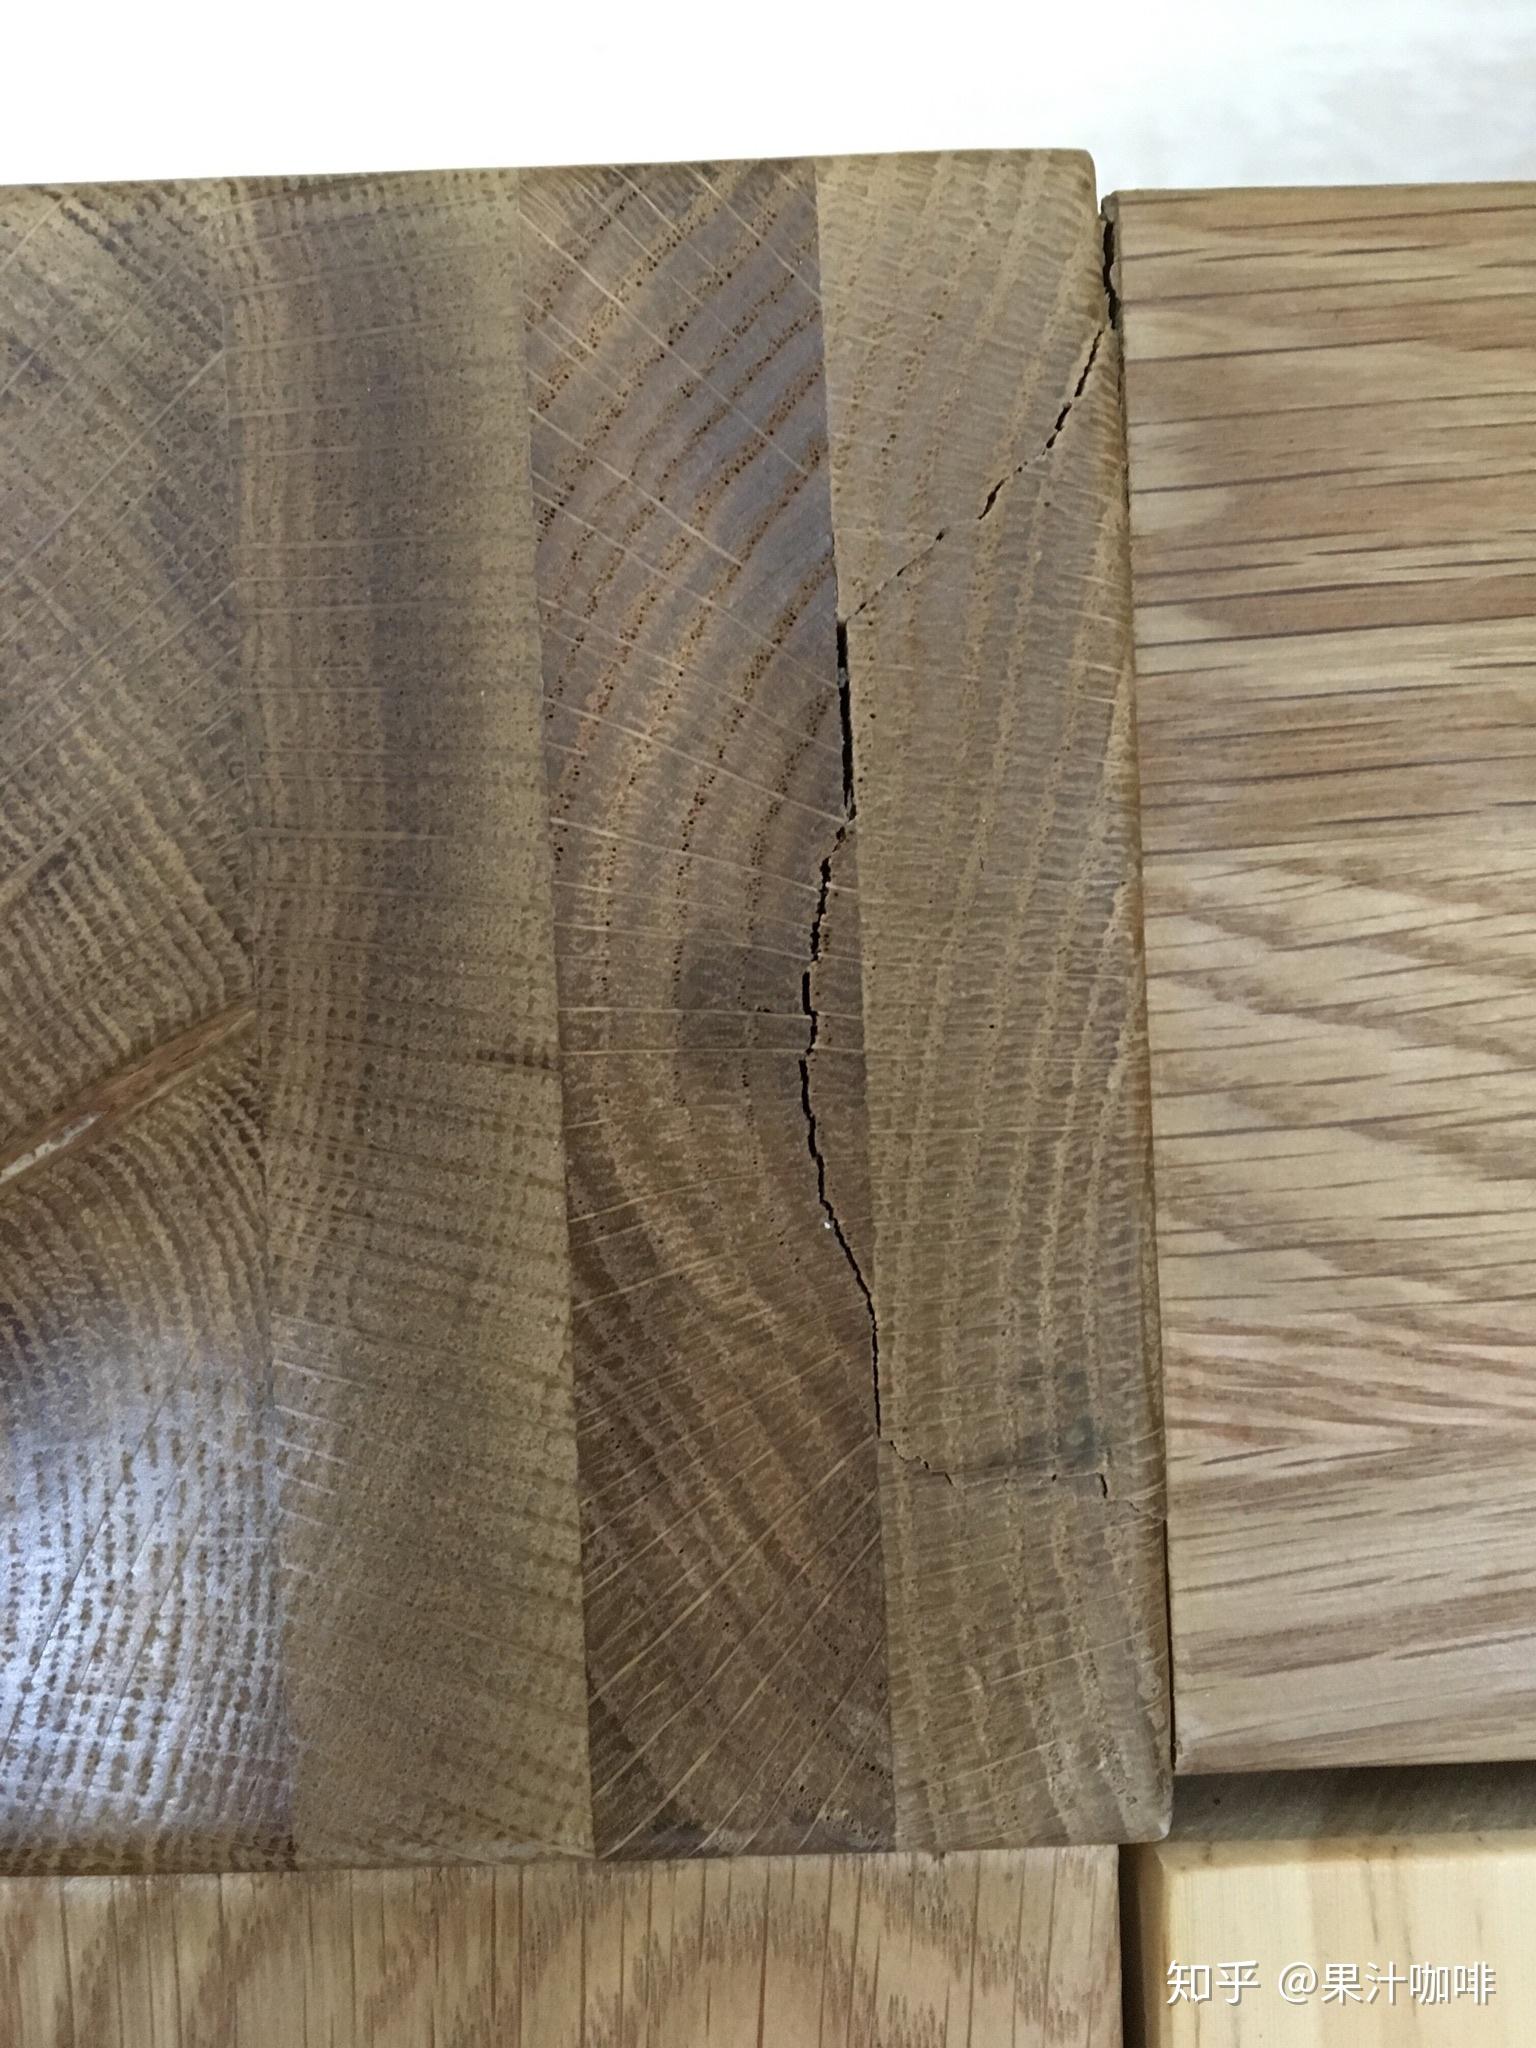 刚买的实木家具就开裂了是否是质量问题